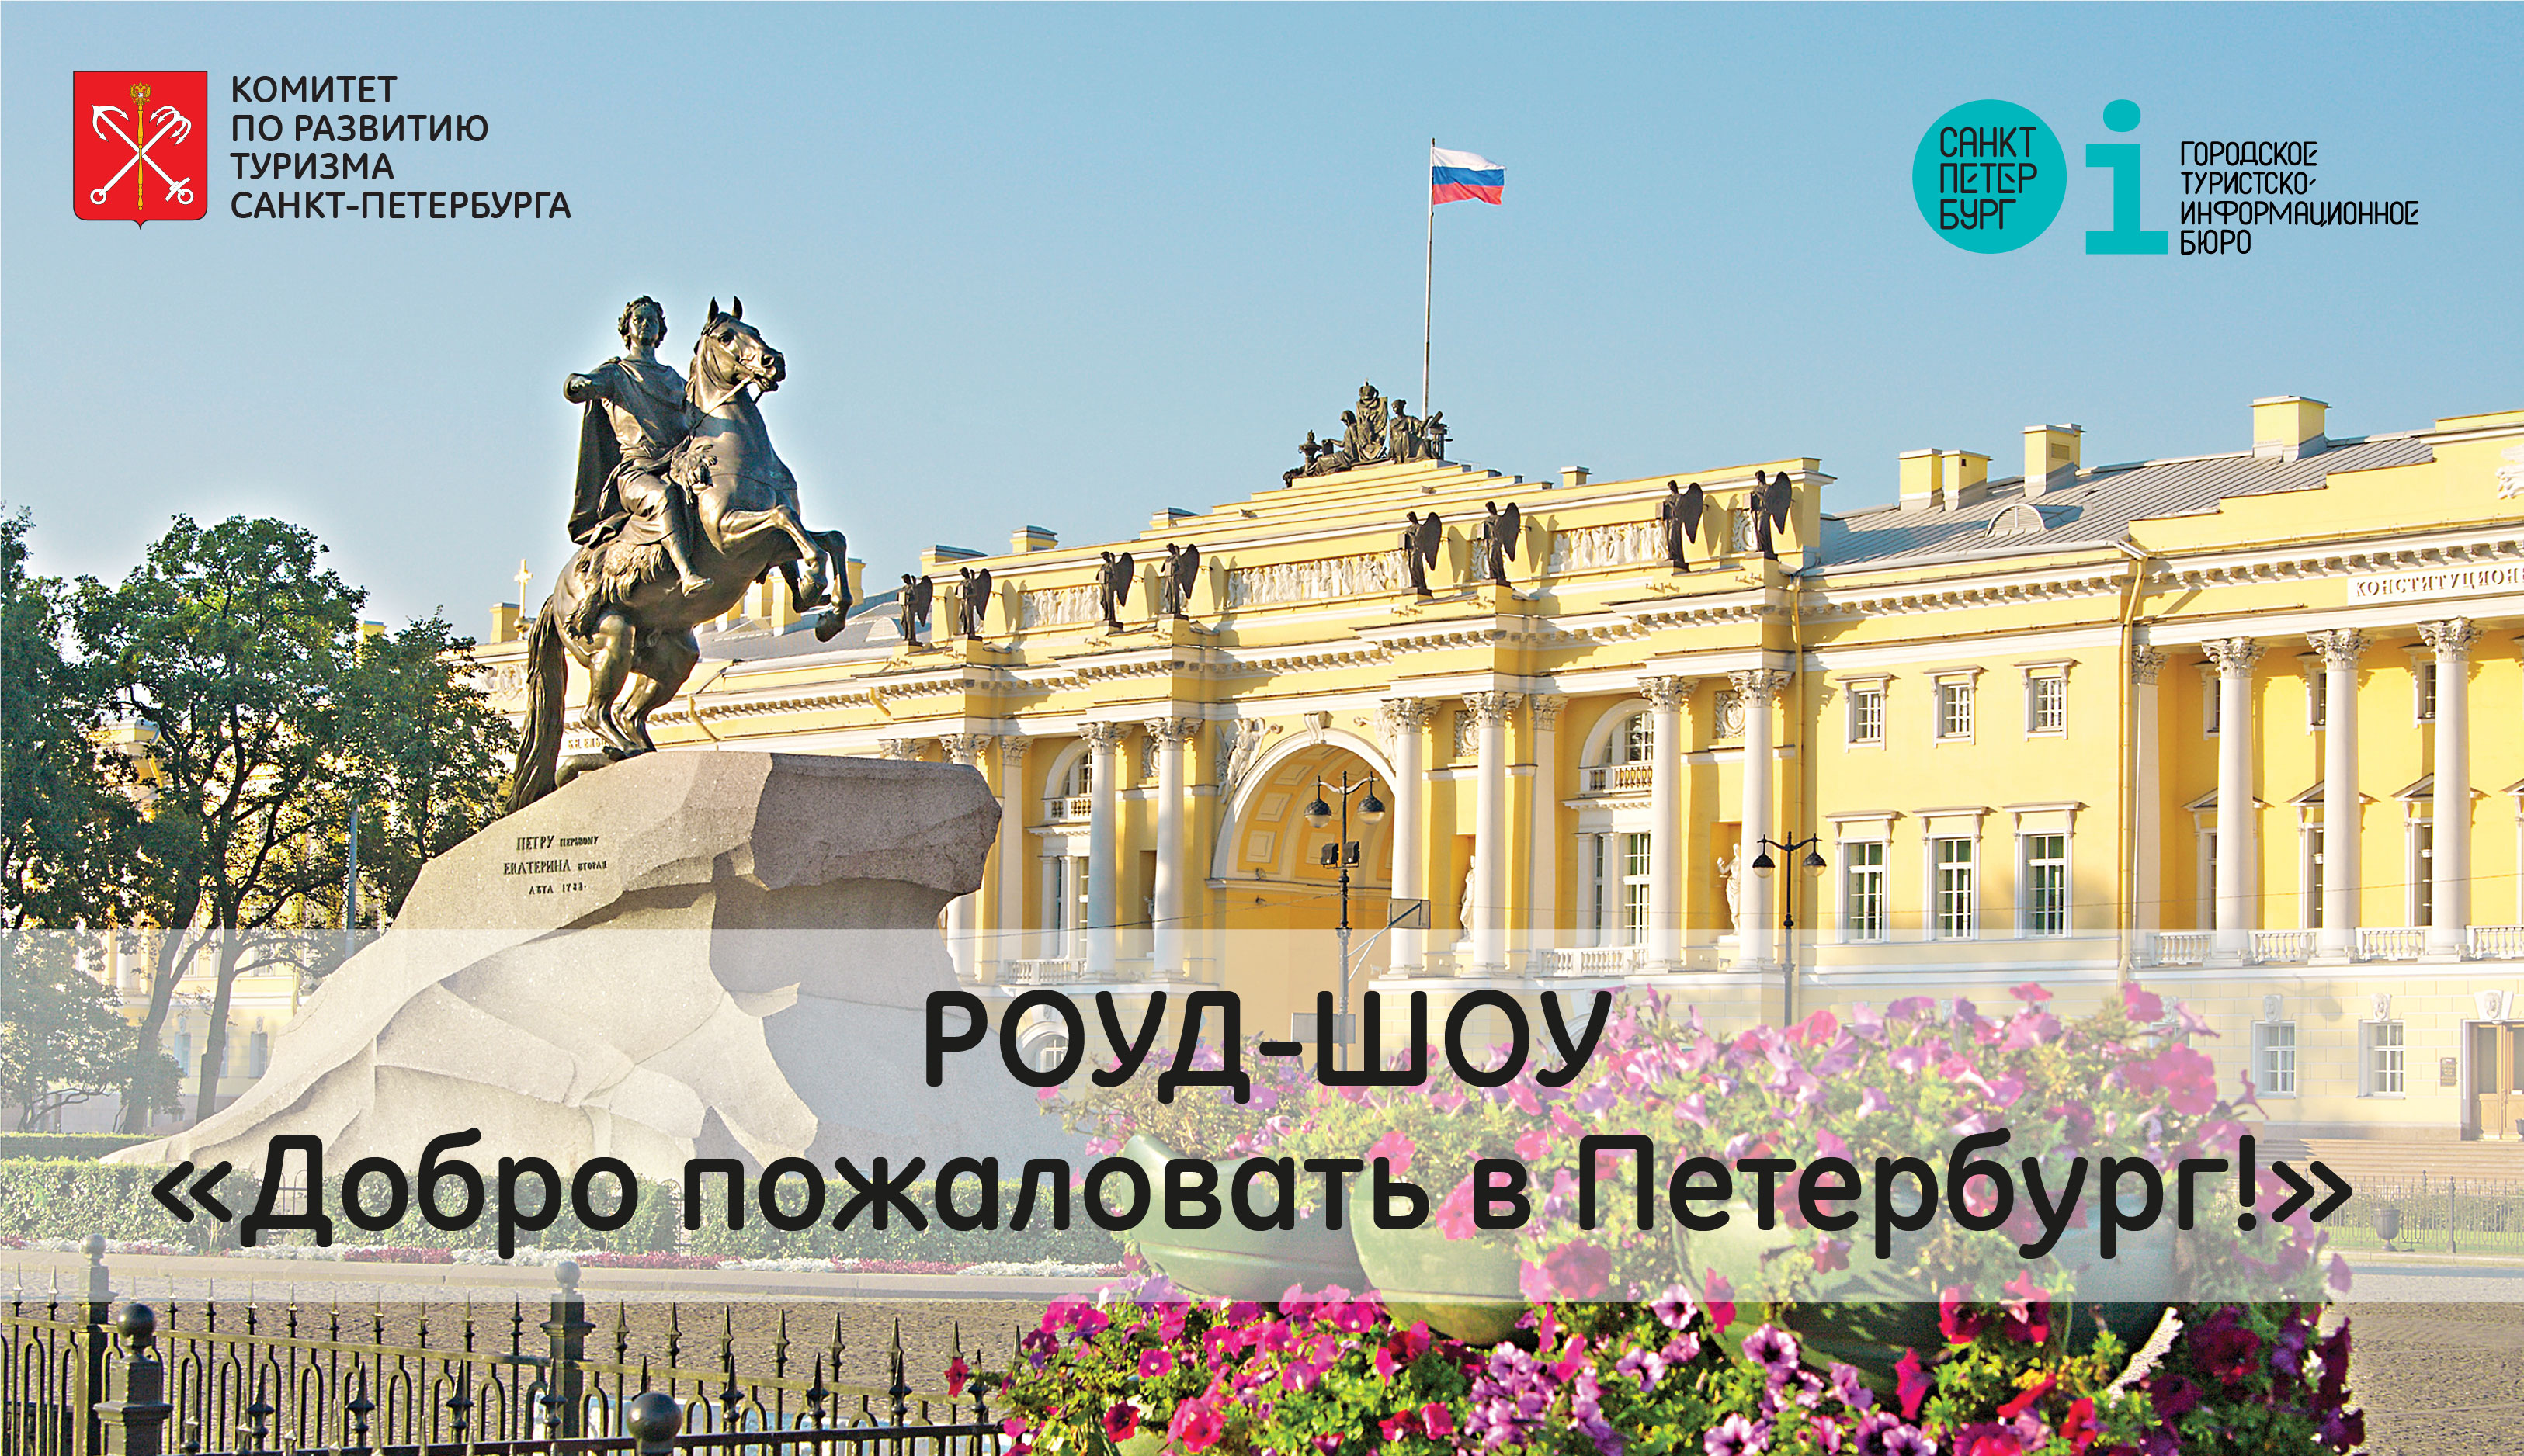 Приглашаем к участию в роуд-шоу «Добро пожаловать в Санкт-Петербург!» в Республике Армения с презентацией туристских возможностей Санкт-Петербурга